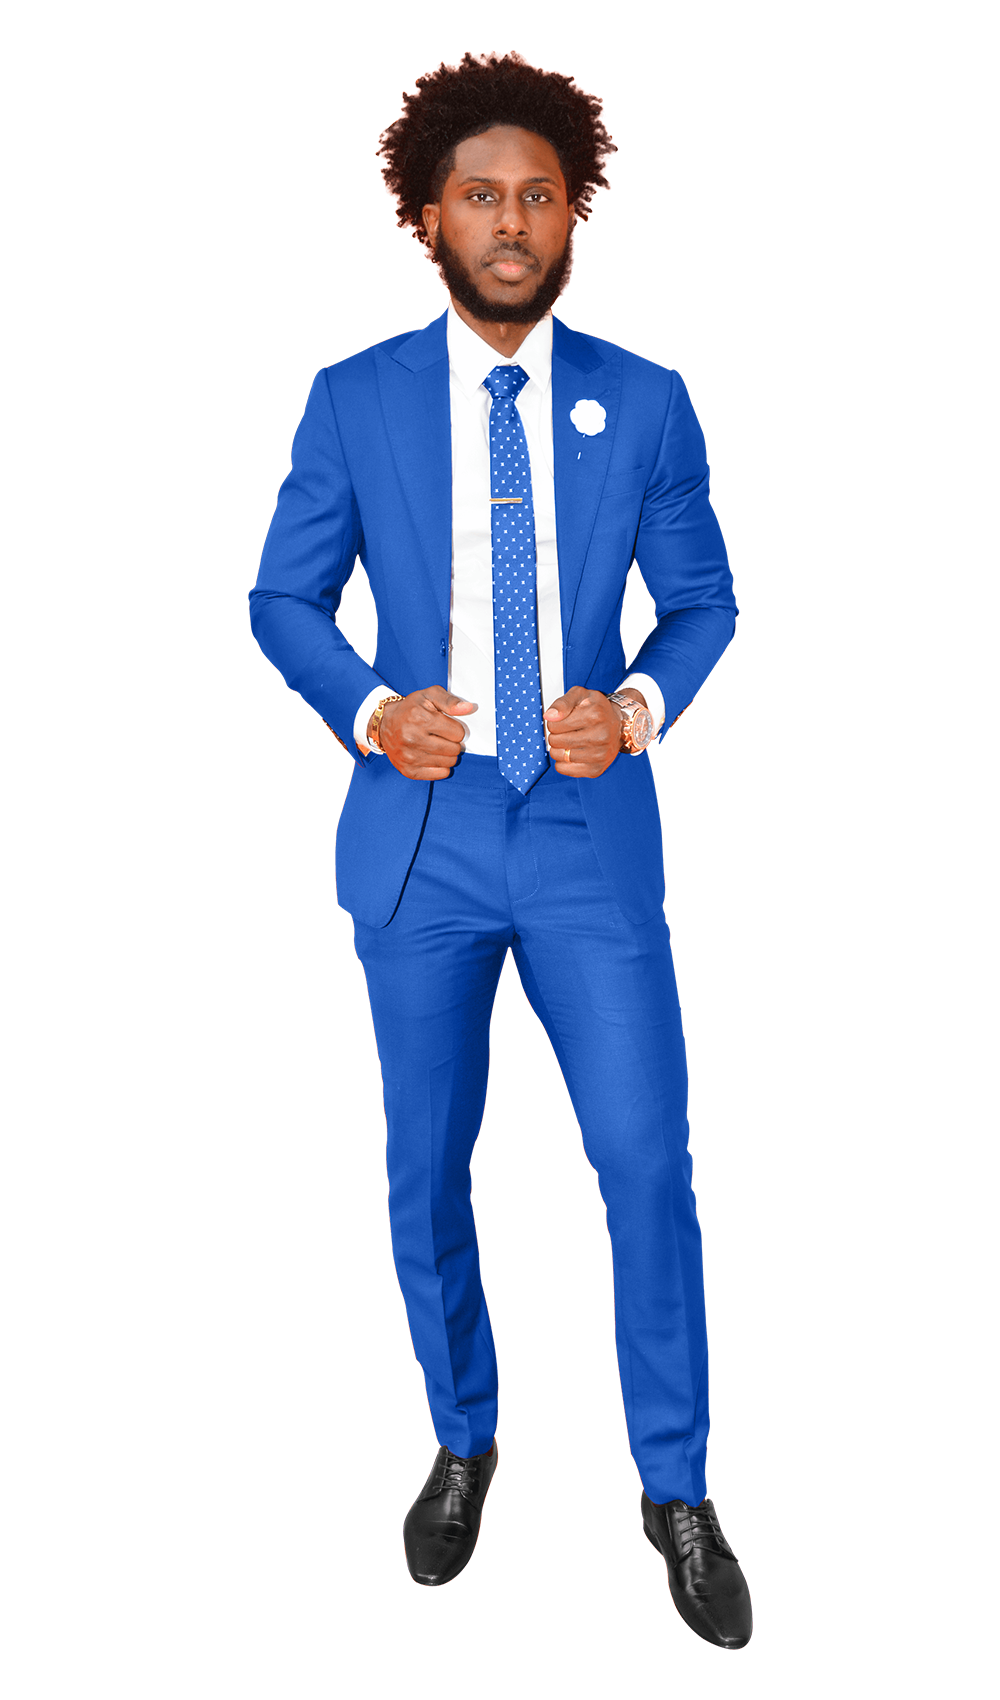 The Regal Blue Suit